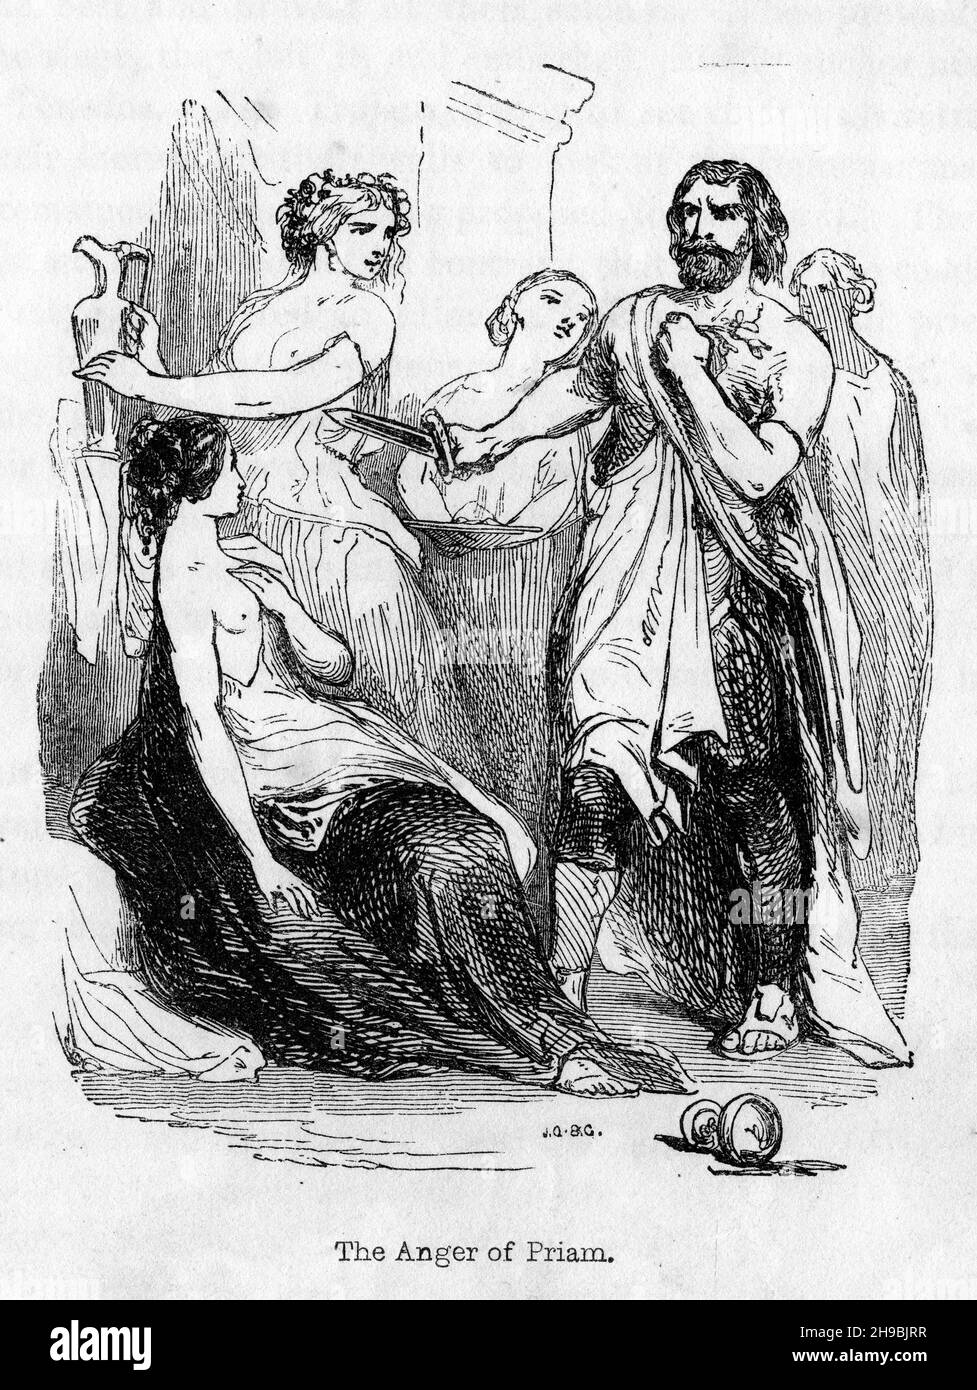 Incisione della collera di Priam. Da un libro del 19 ° secolo sulla mitologia heathen. Foto Stock